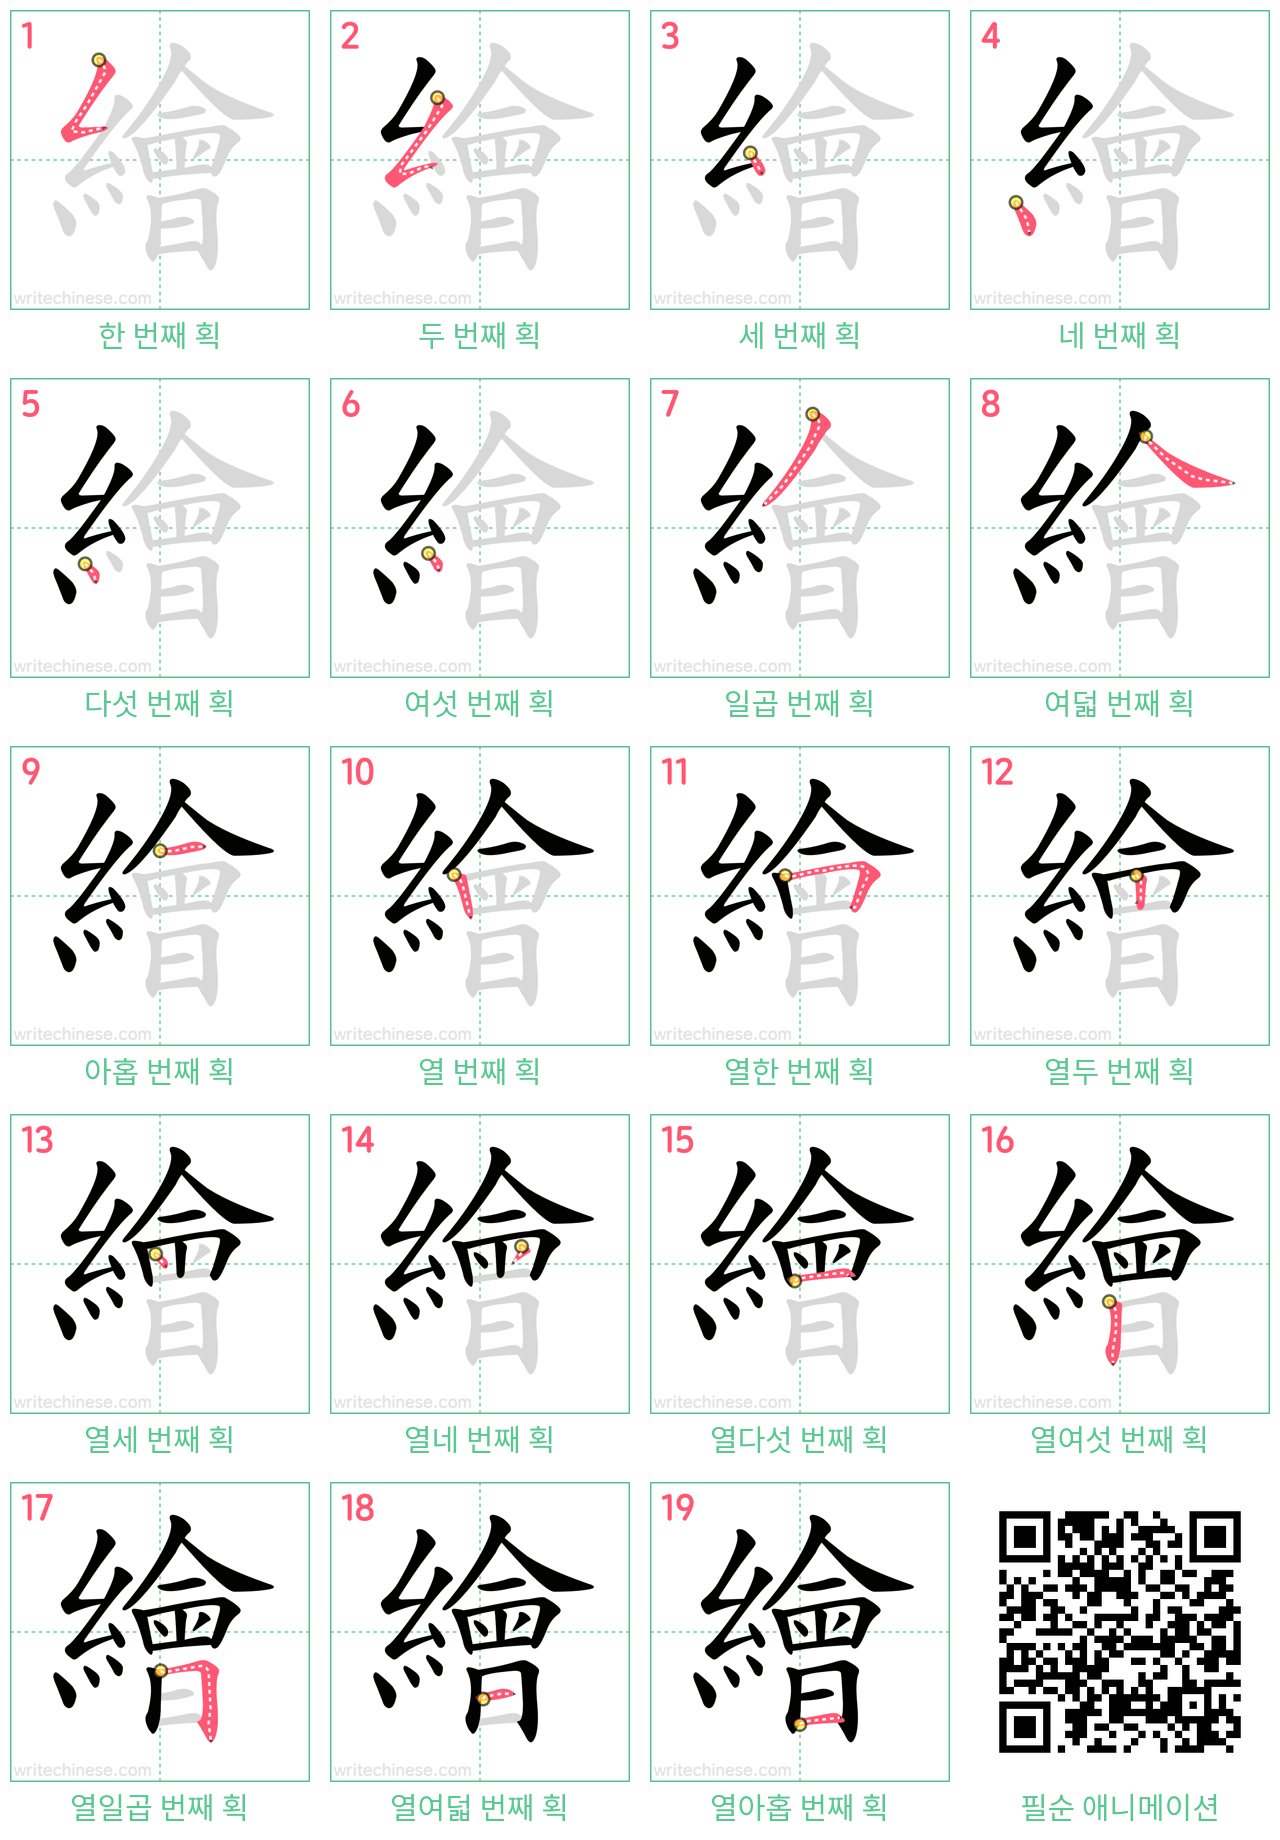 繪 step-by-step stroke order diagrams